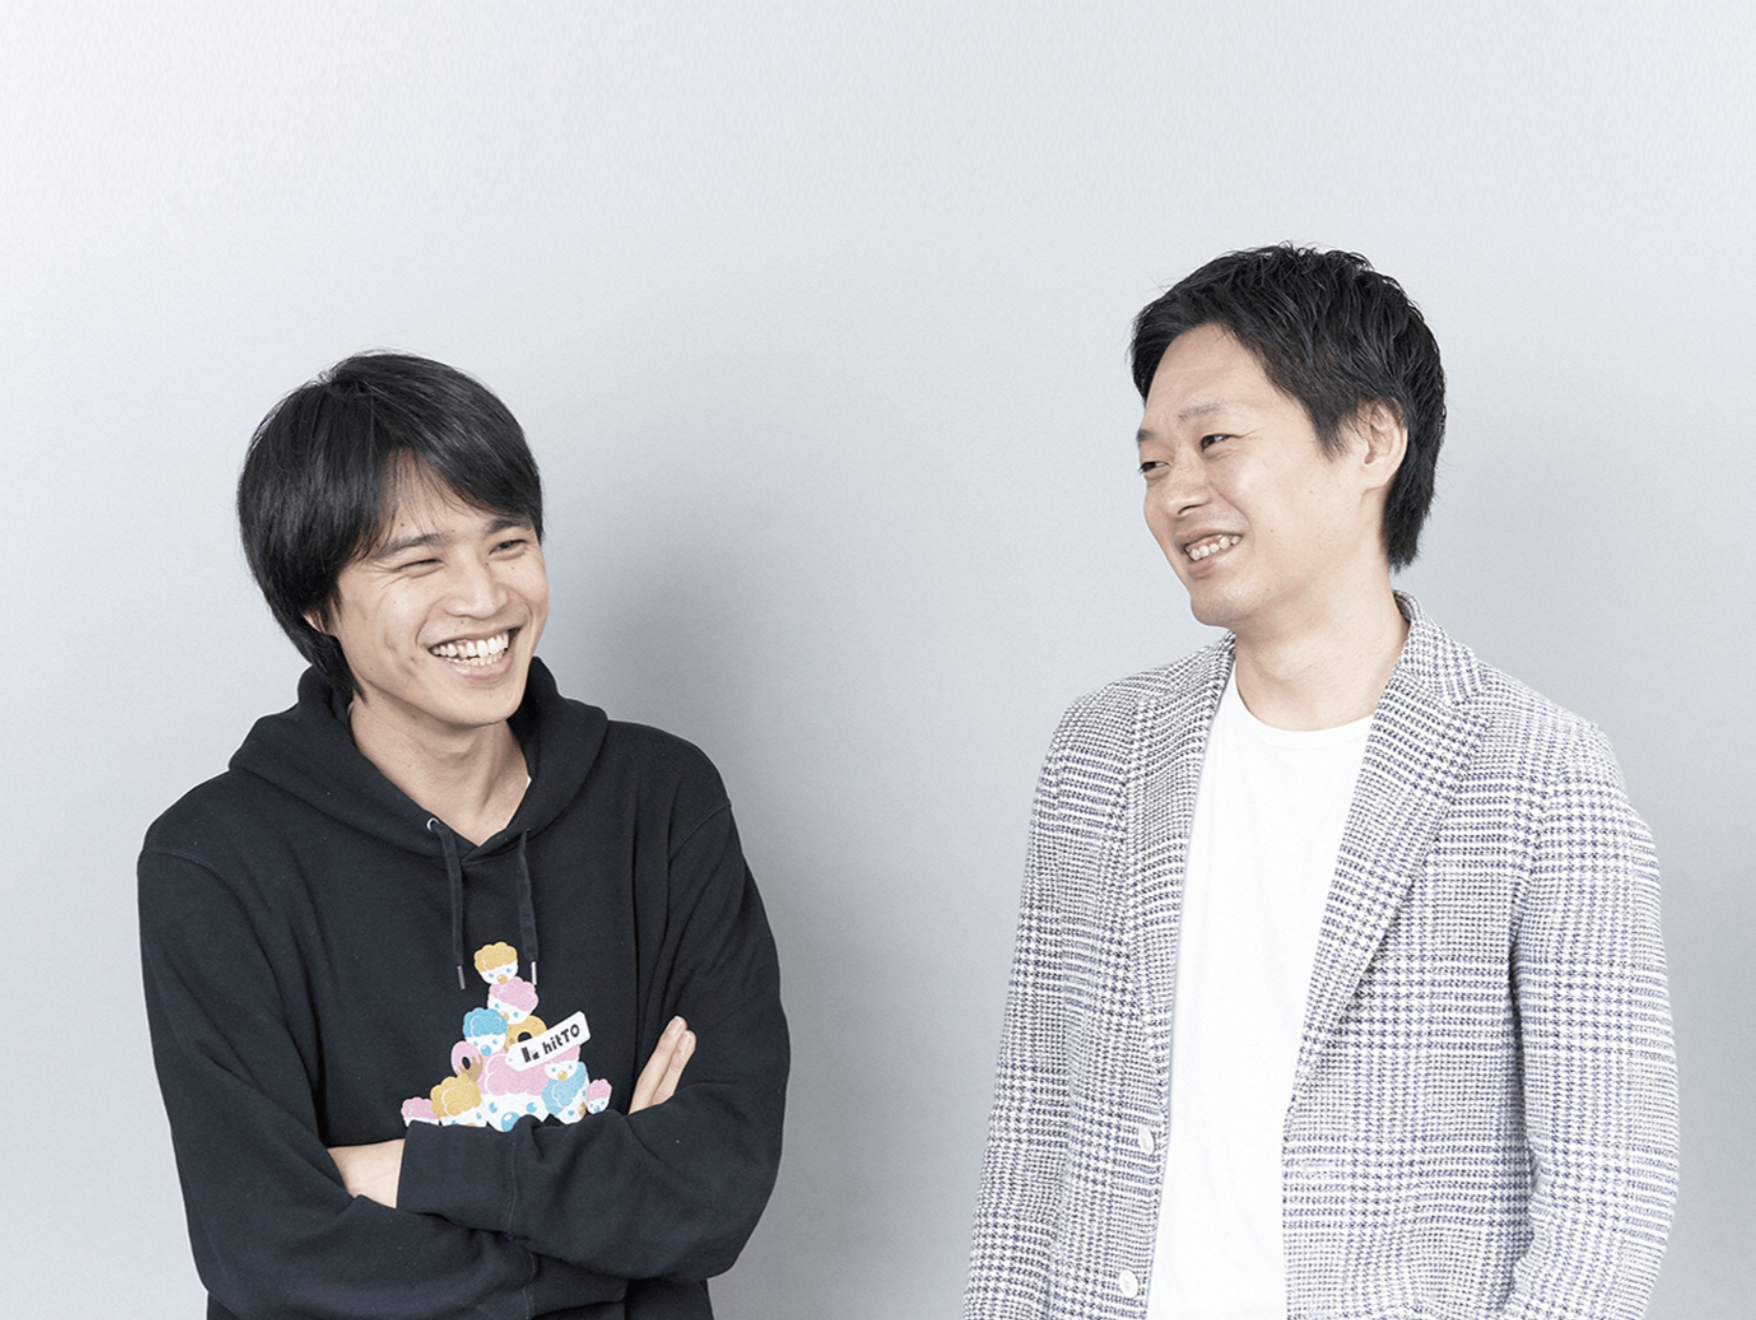 （左）代表取締役 Co-CEO  木村 彰人
（右）代表取締役 Co-CEO  五十嵐 智博